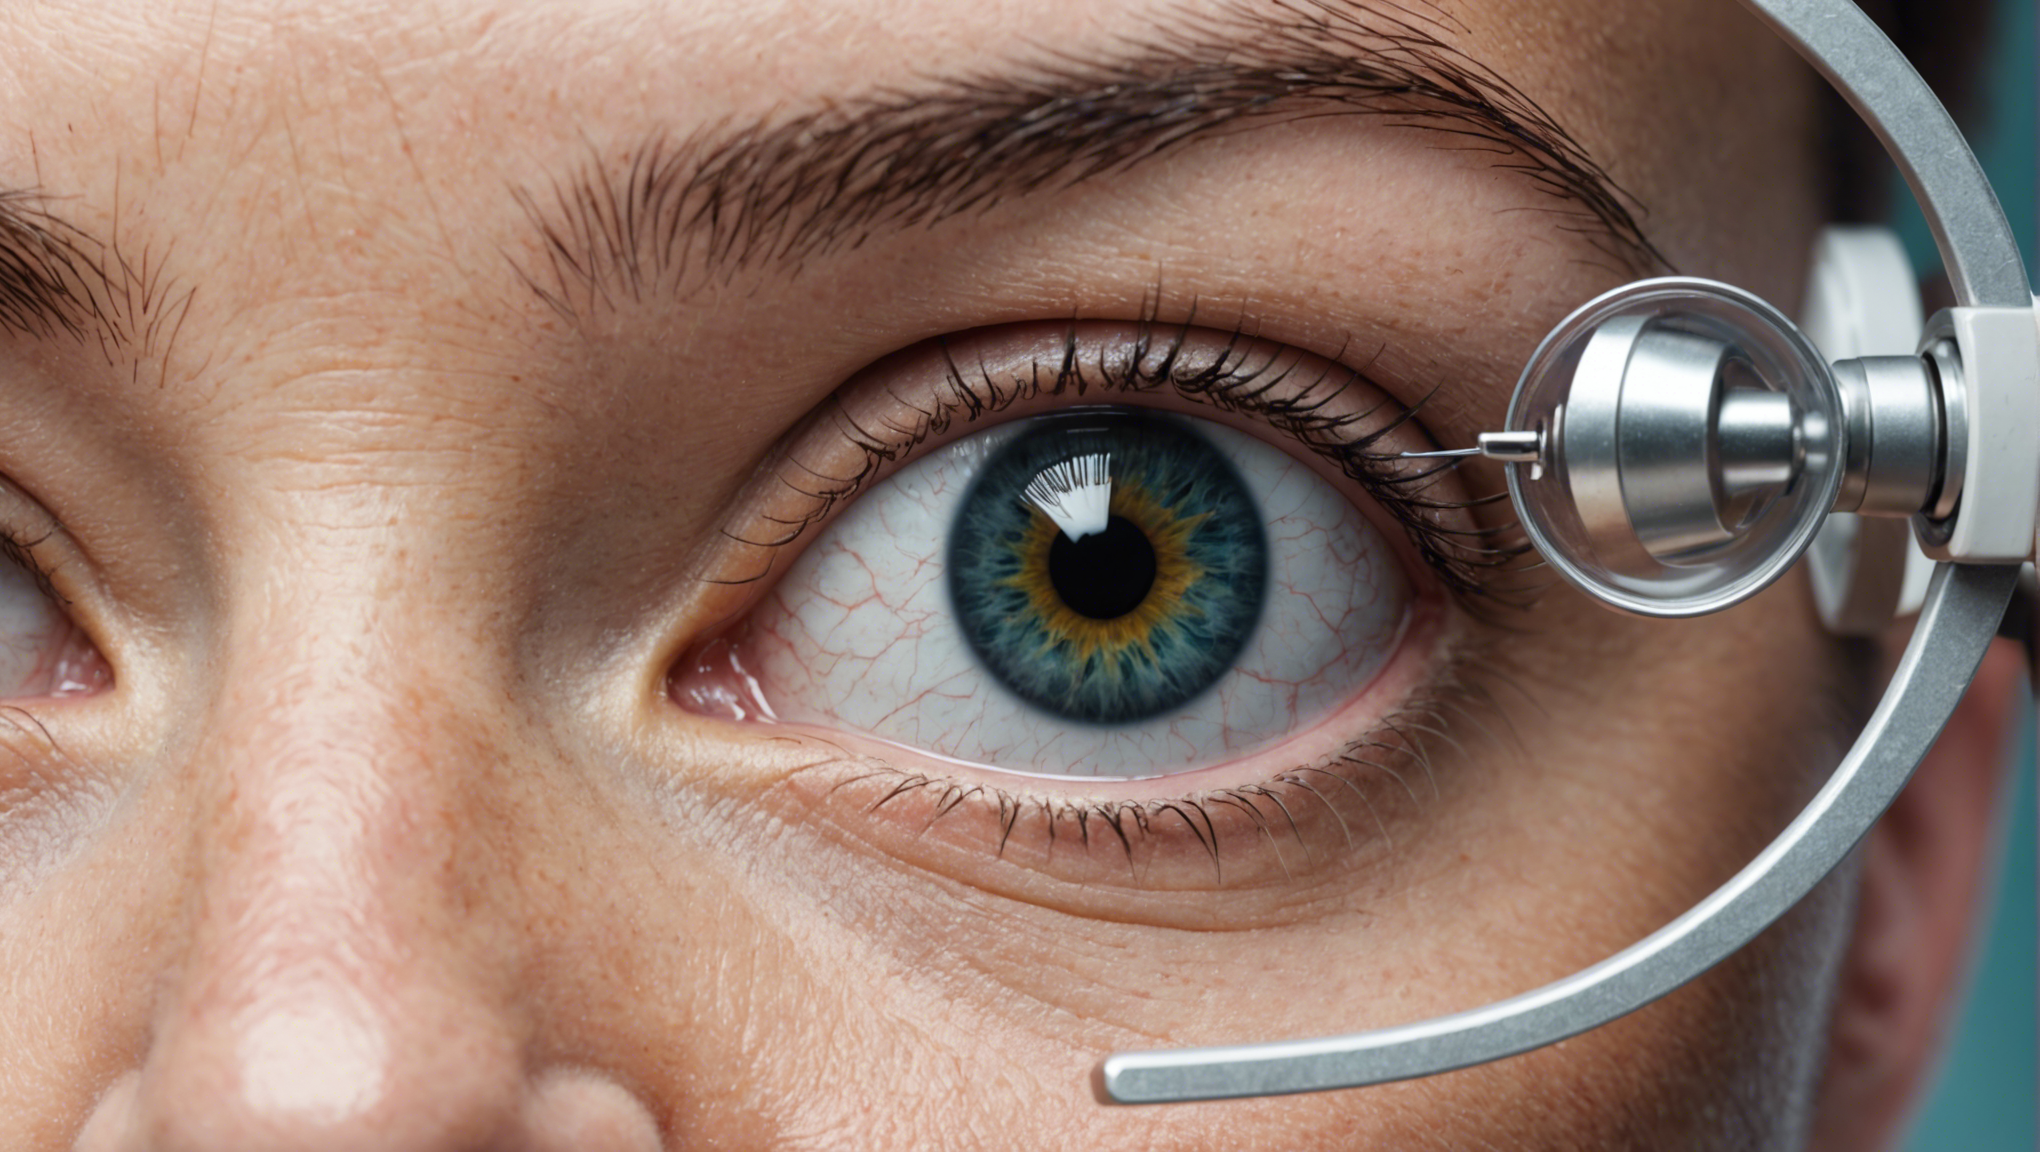 découvrez comment la chirurgie de la cataracte peut vous aider à retrouver une vision claire. informations sur le processus, les avantages et les résultats de cette solution efficace.